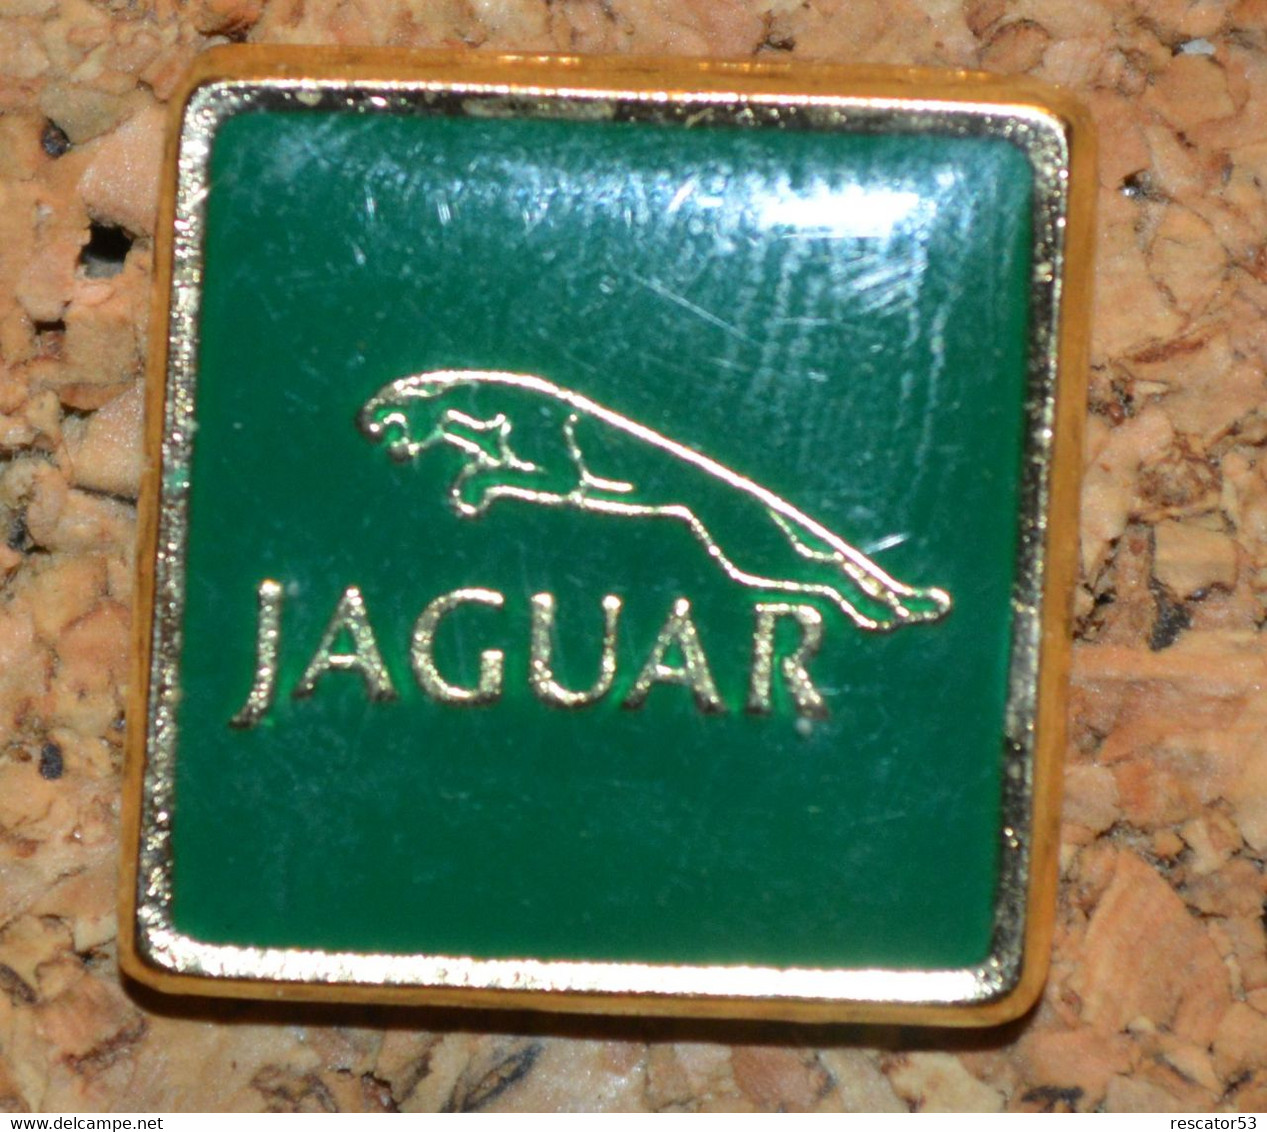 Rare Pin's Jaguar - Jaguar